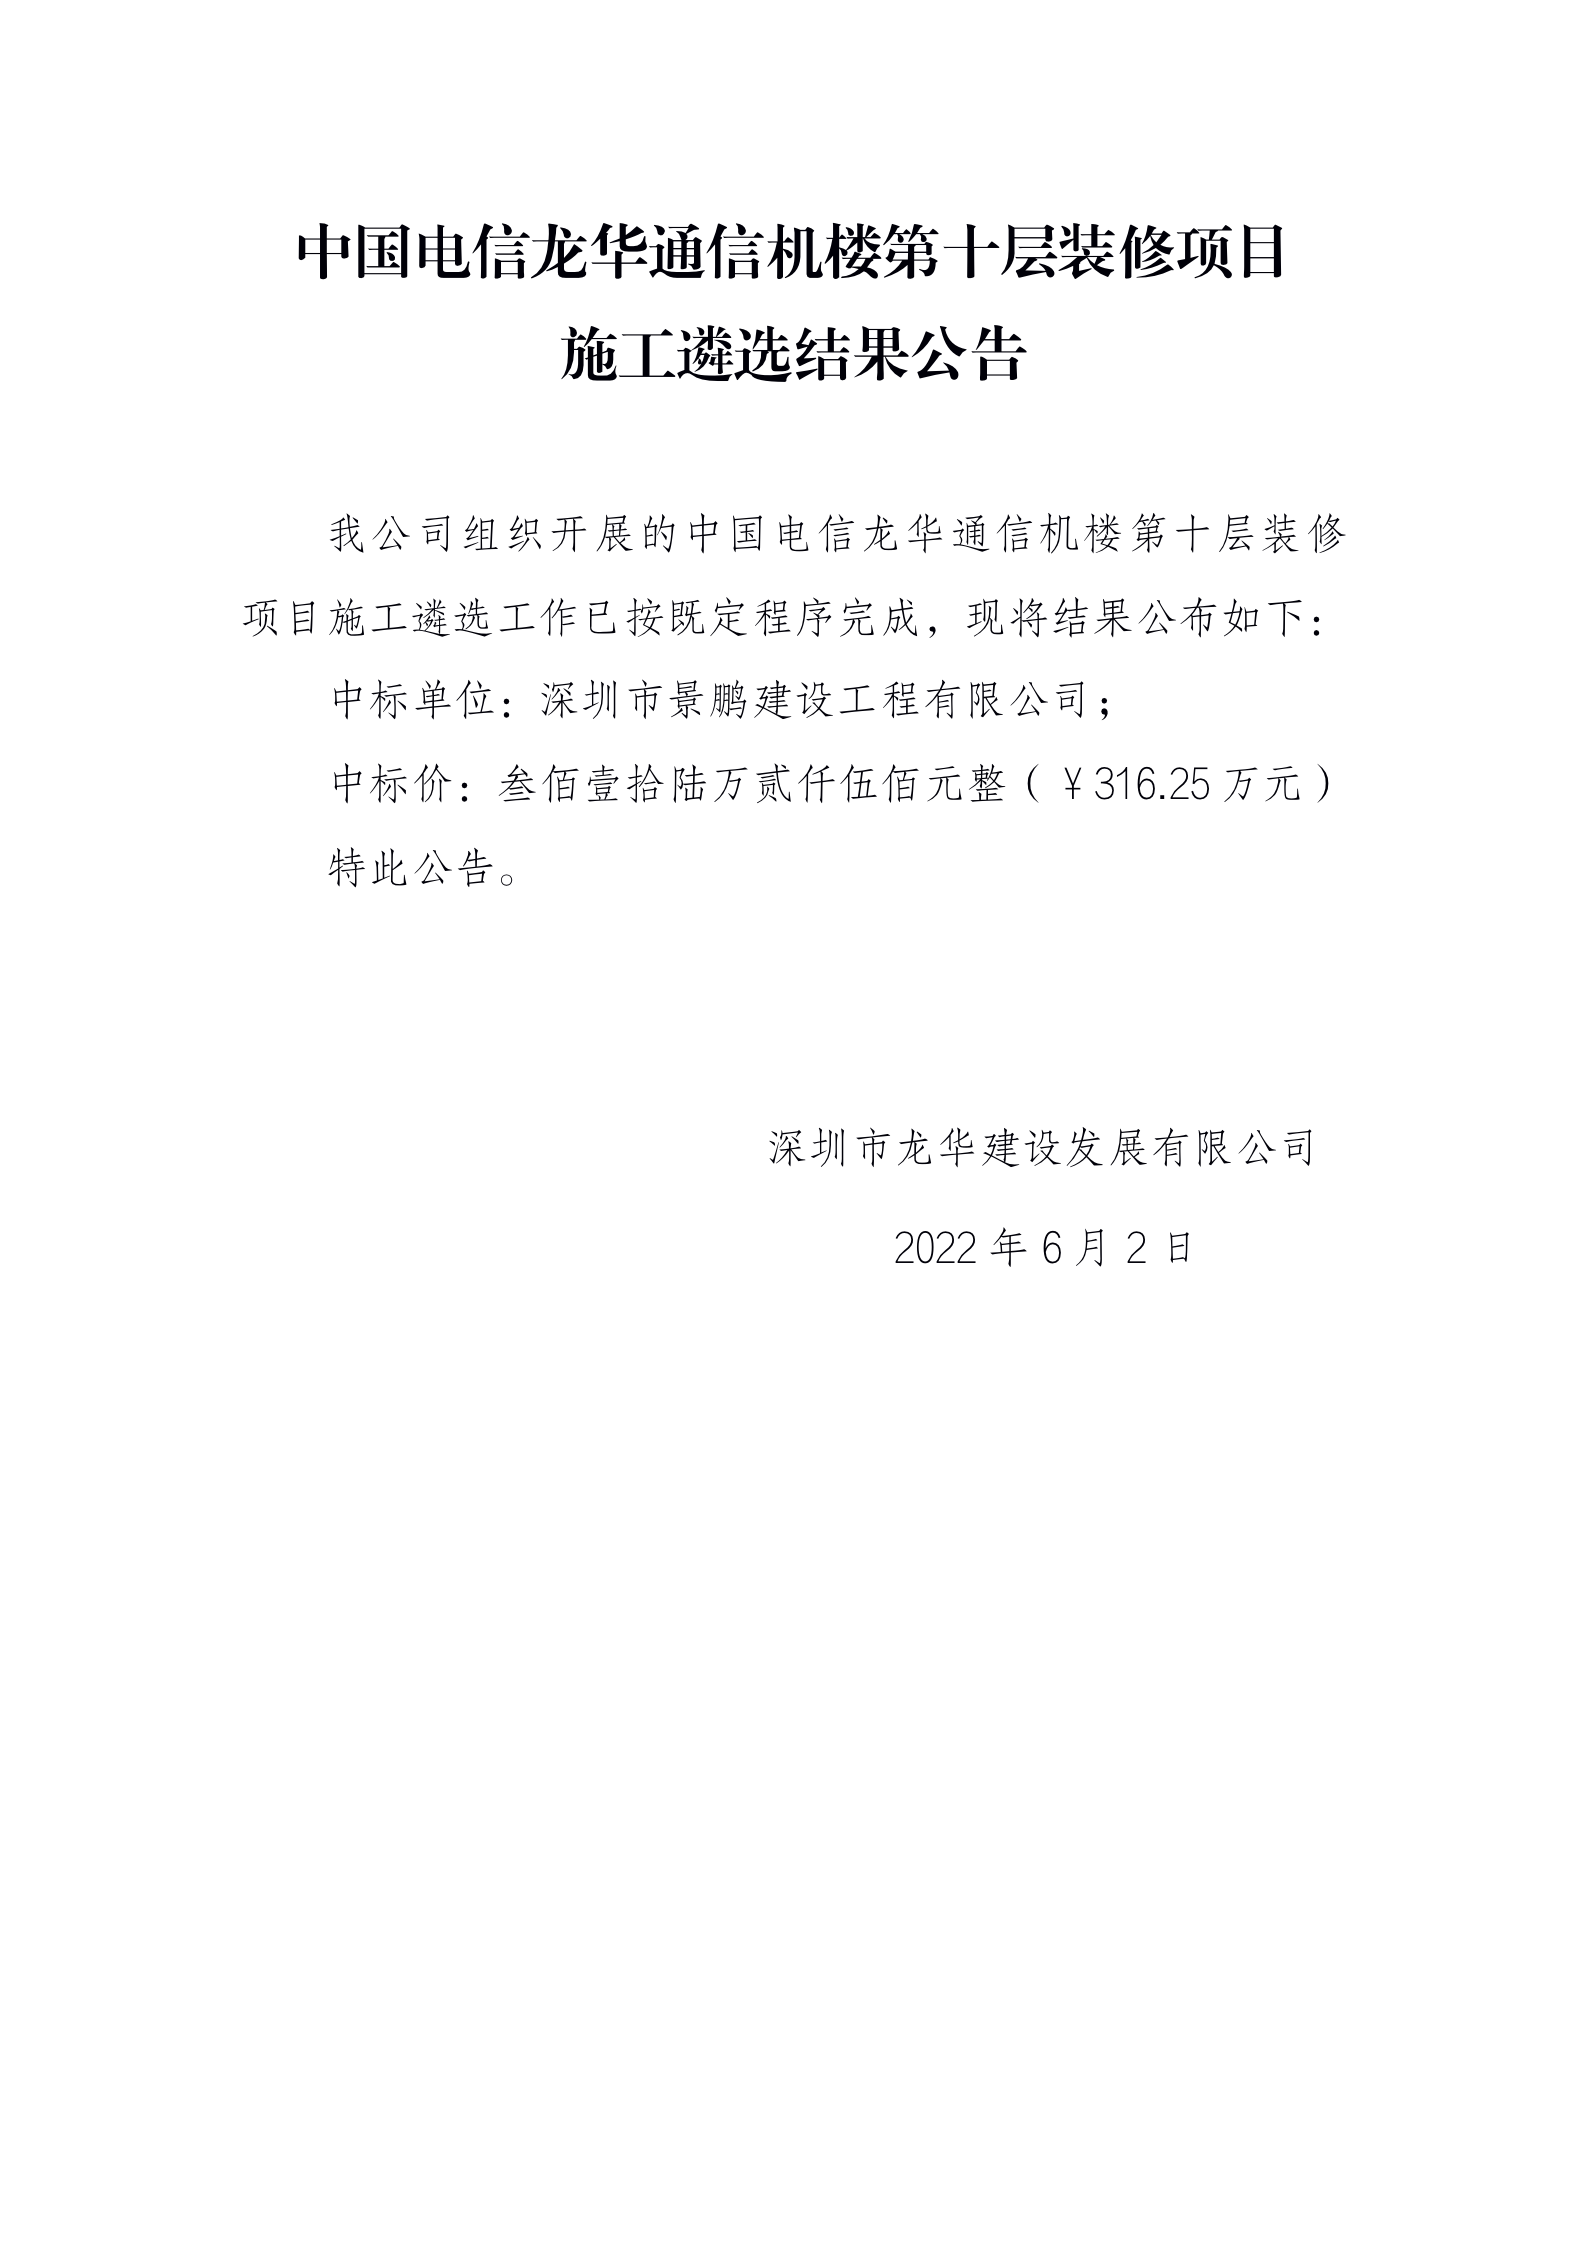 中国电信龙华通信机楼第十层装修项目施工遴选结果公告